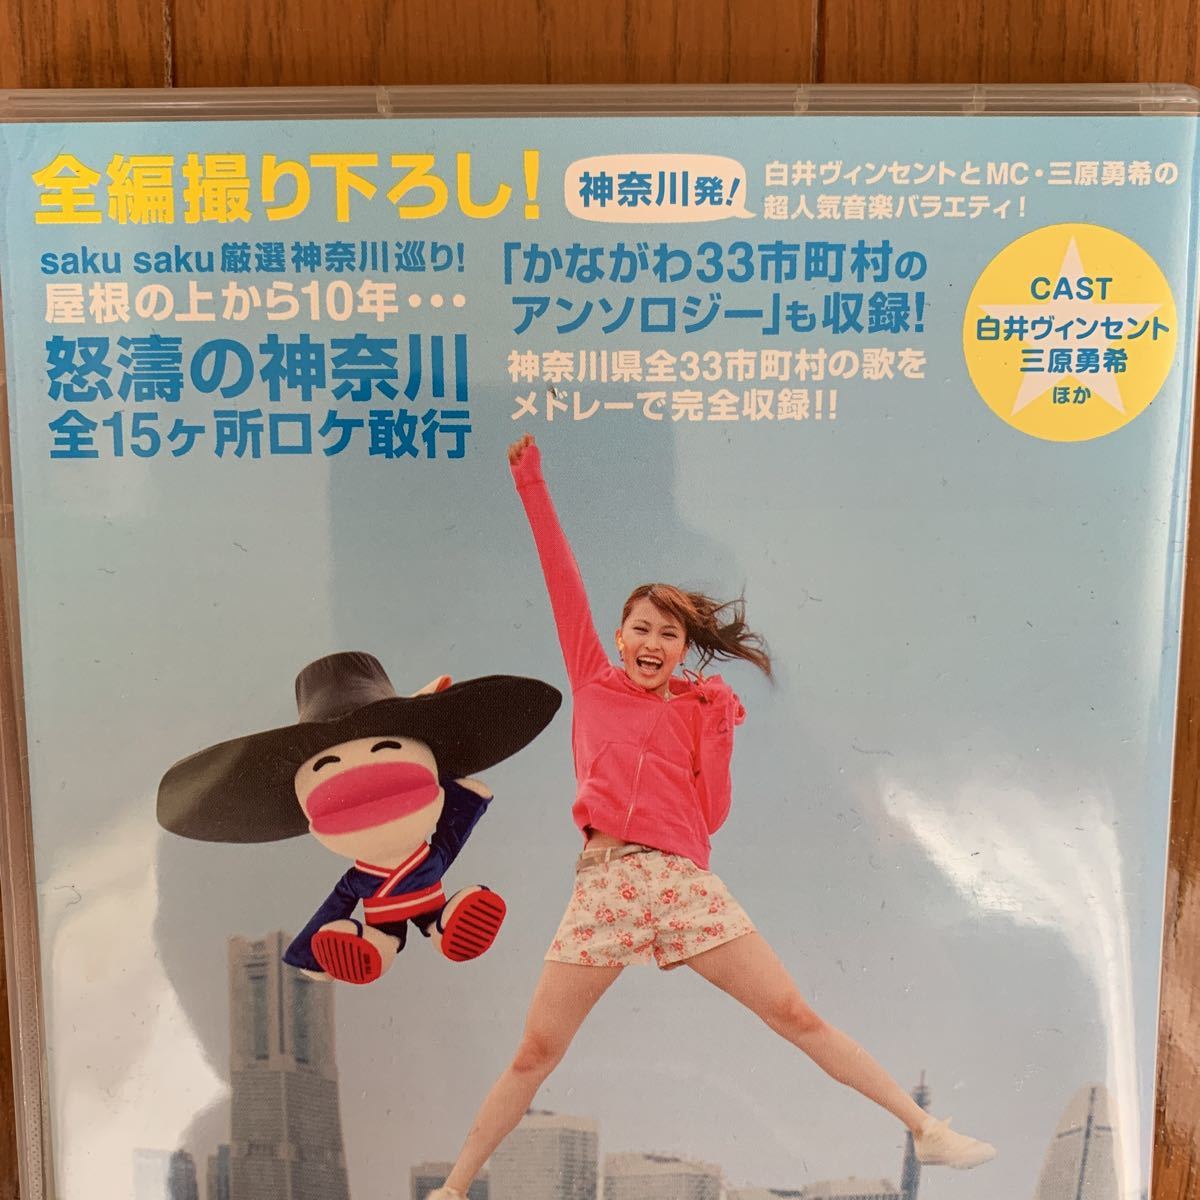 sakusaku DVD ver.1.0 2.0 5.0 6.0 の4枚セット - お笑い・バラエティ